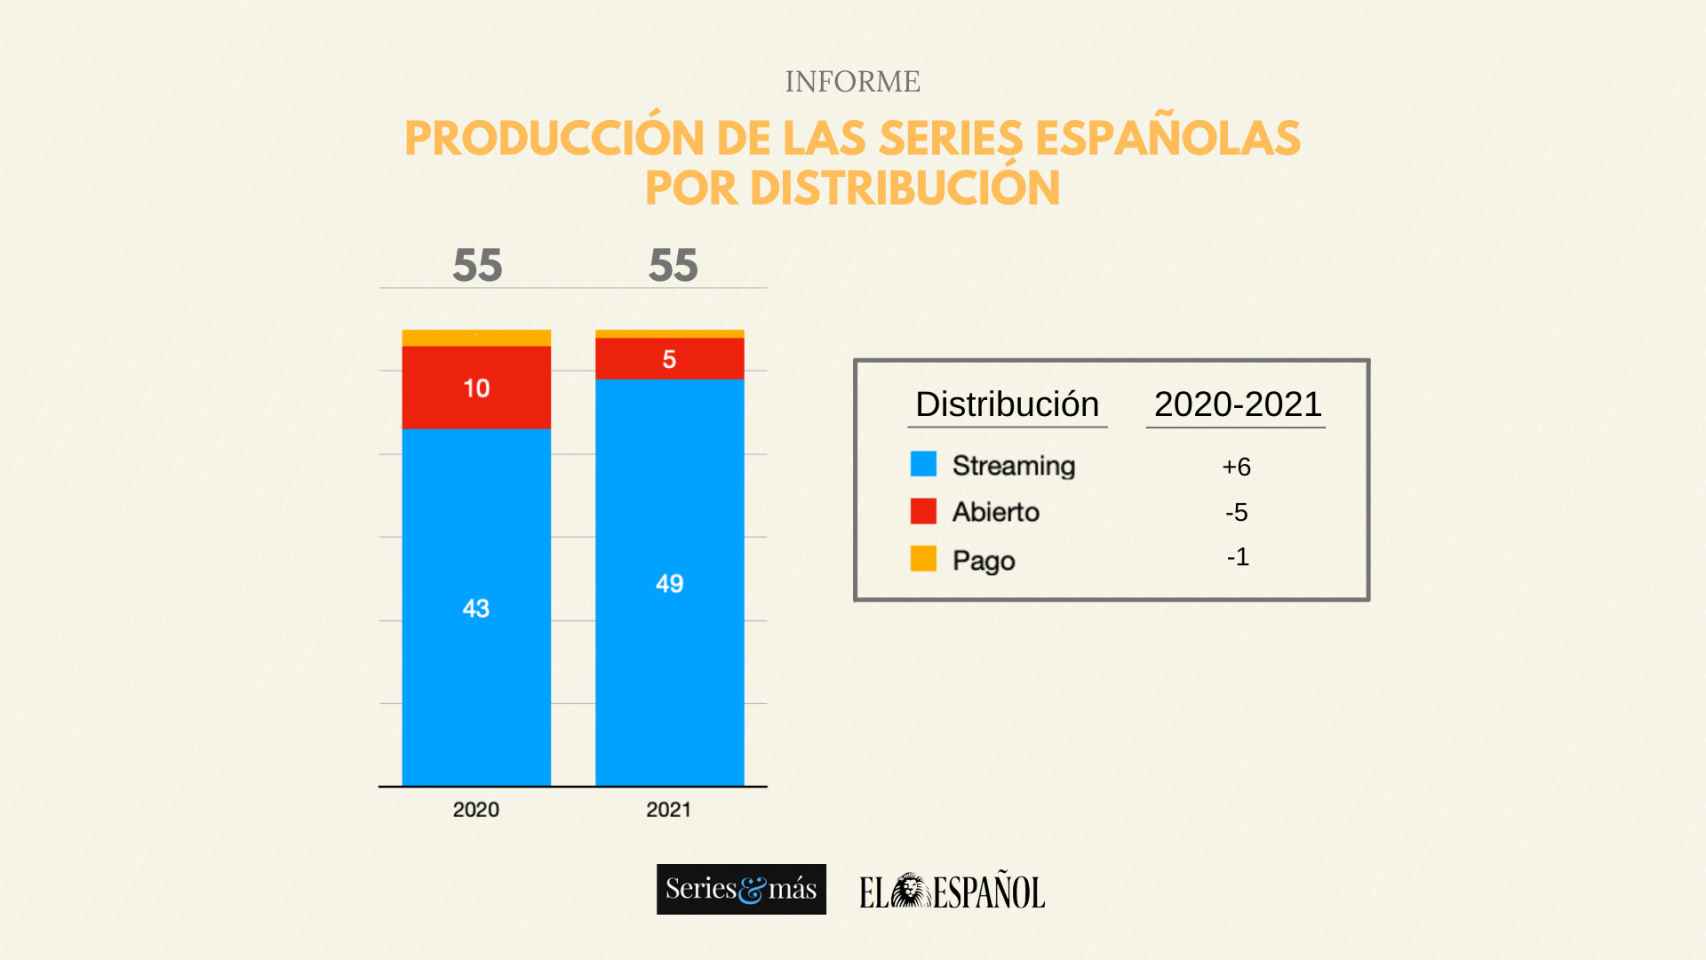 Informe de producción de las series españolas durante 2020 y 2021 por distribución.